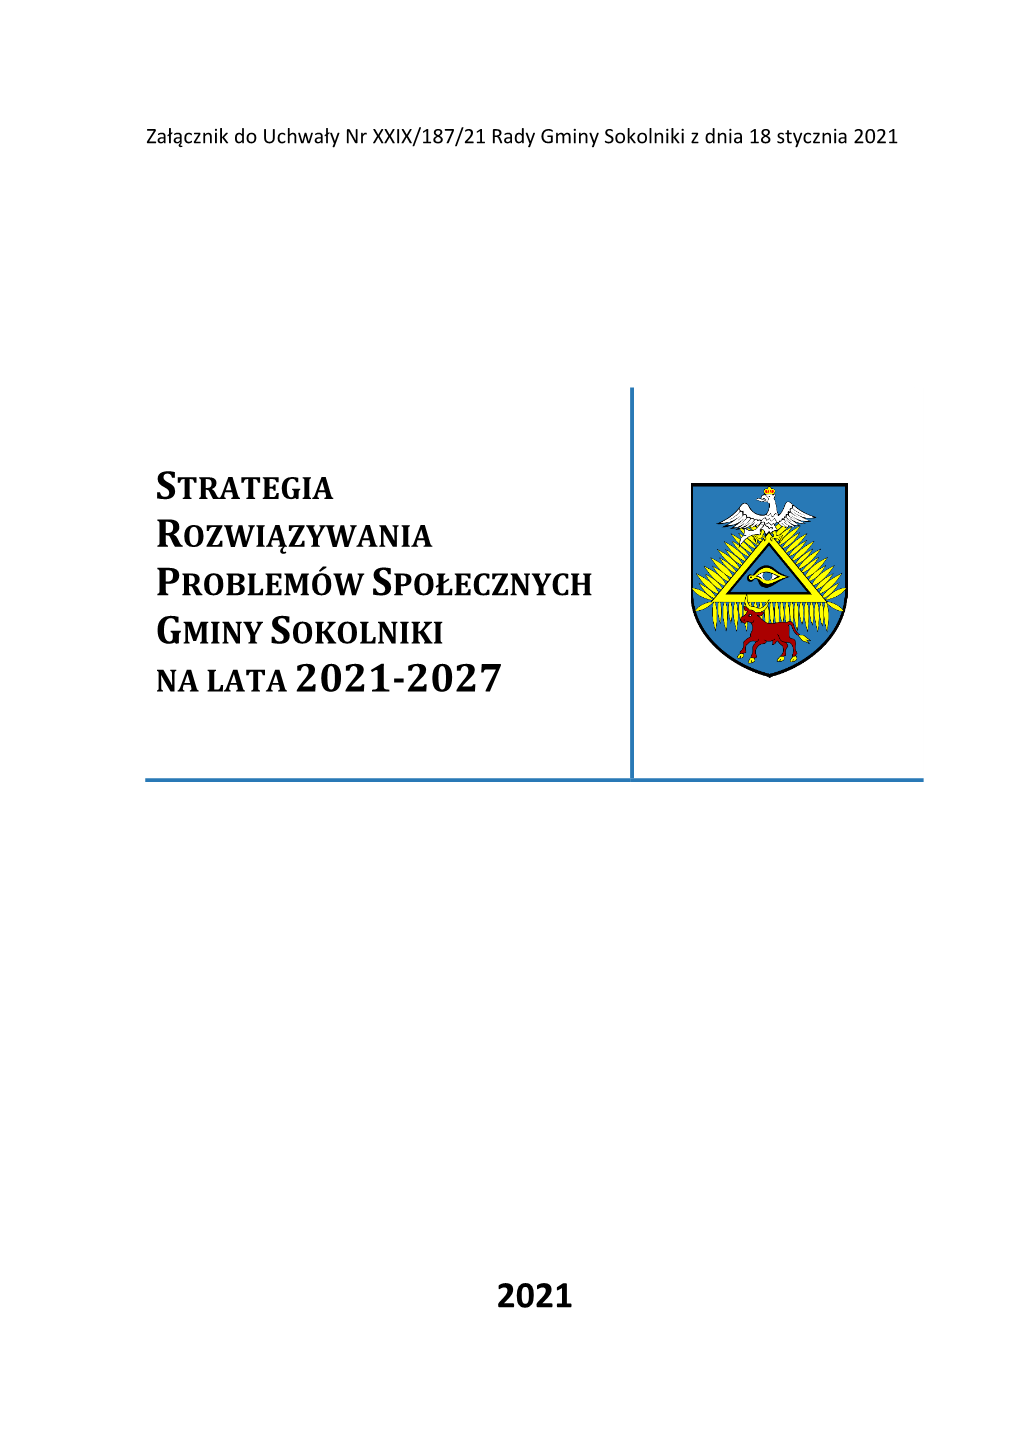 Strategia Rozwiązywania Problemów Społecznych Gminy Sokolniki Na Lata 2021-2027